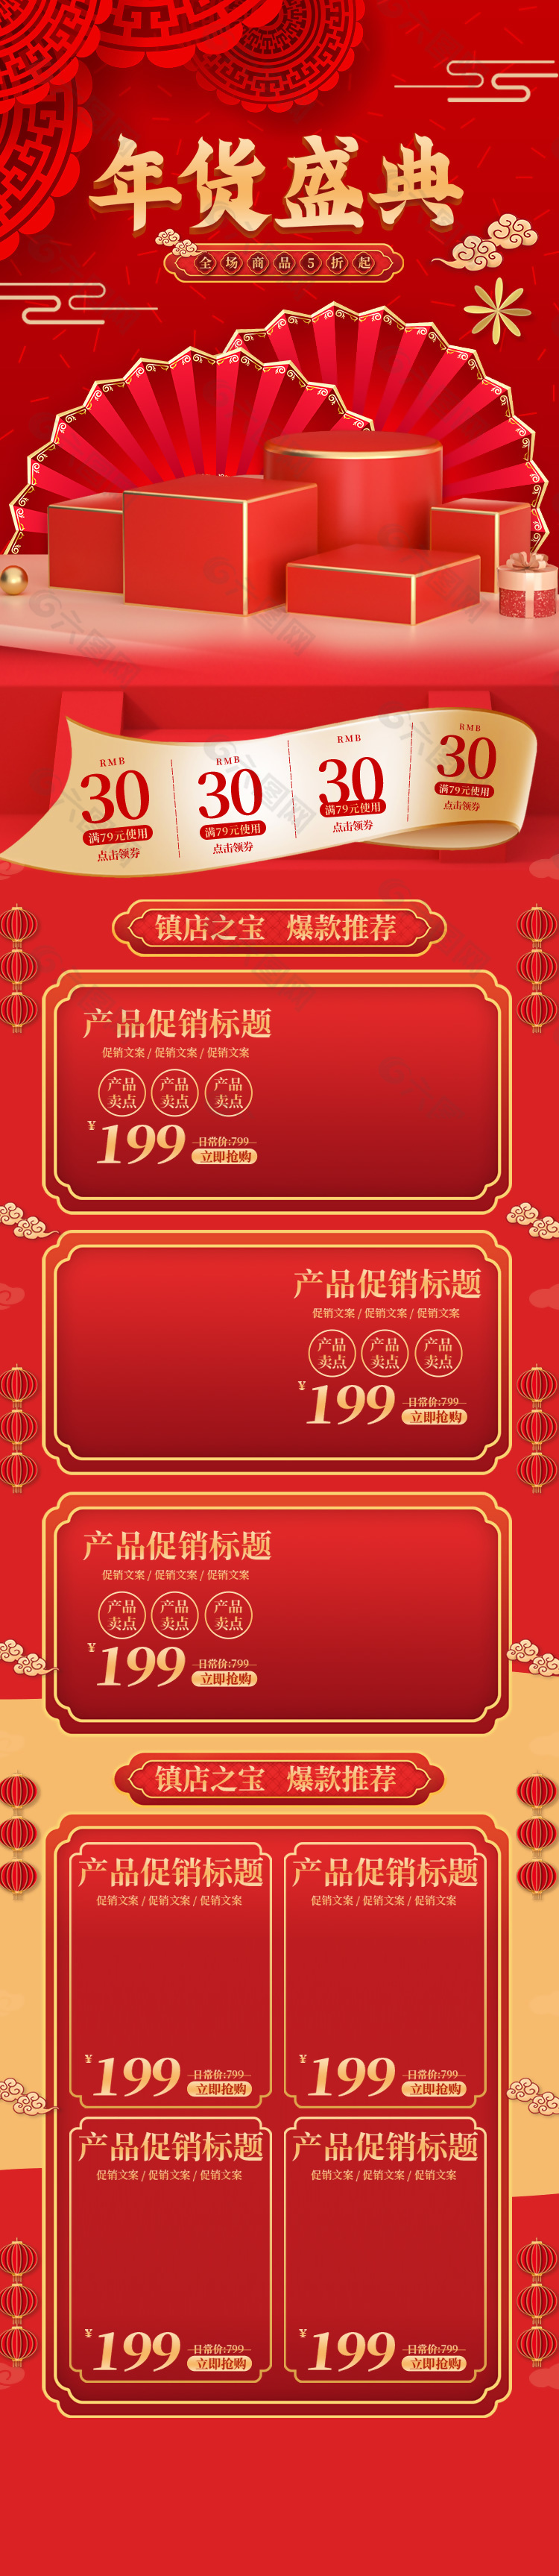 红色喜庆年货盛典大促淘宝界面设计